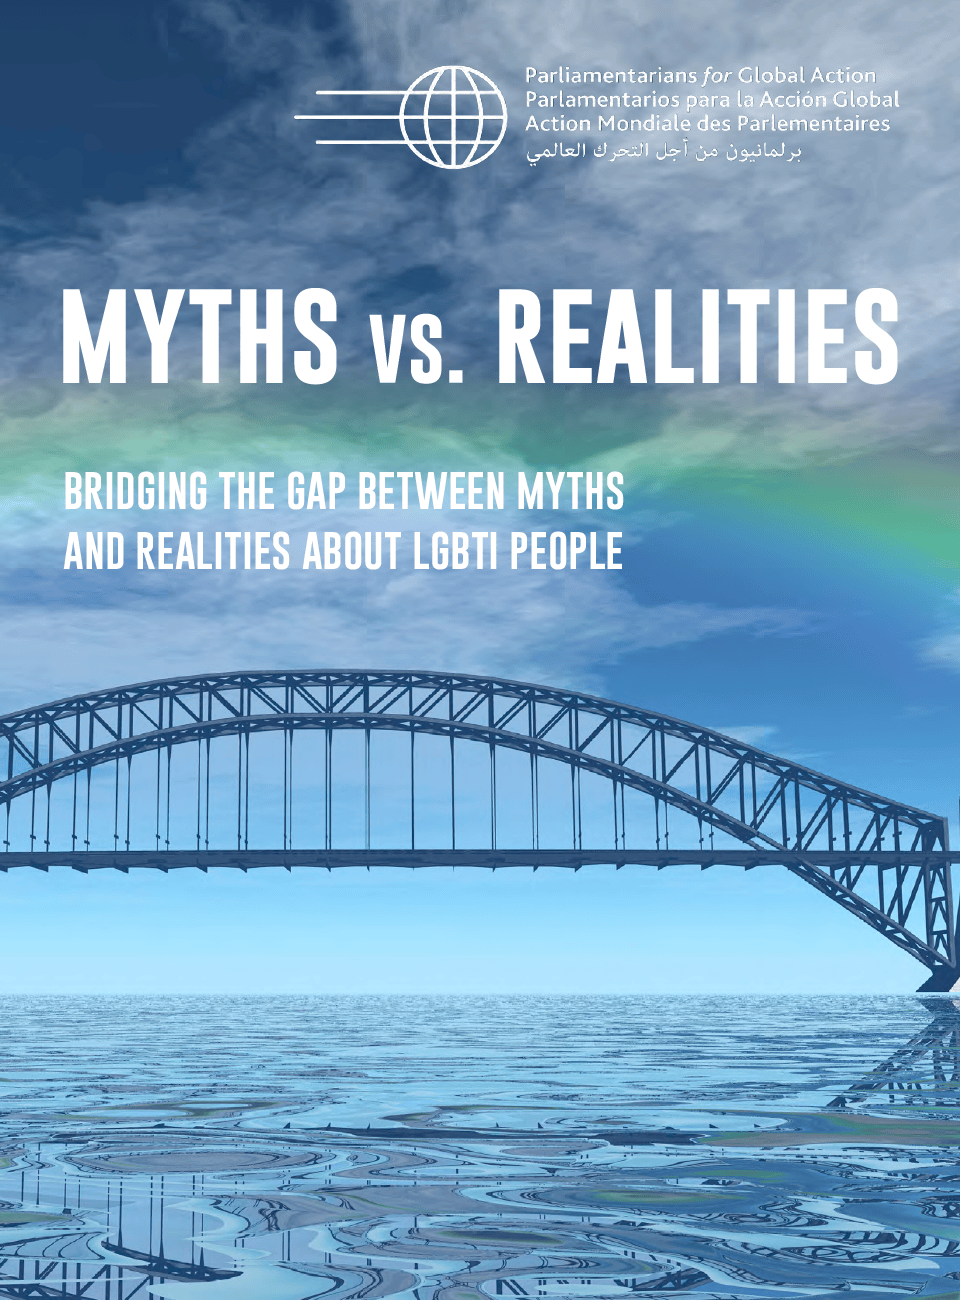 Mitos Frente A Realidades: Tendiendo Puentes Para Mostrar La Realidad De Las Personas Lgbti Frente A Los Mitos